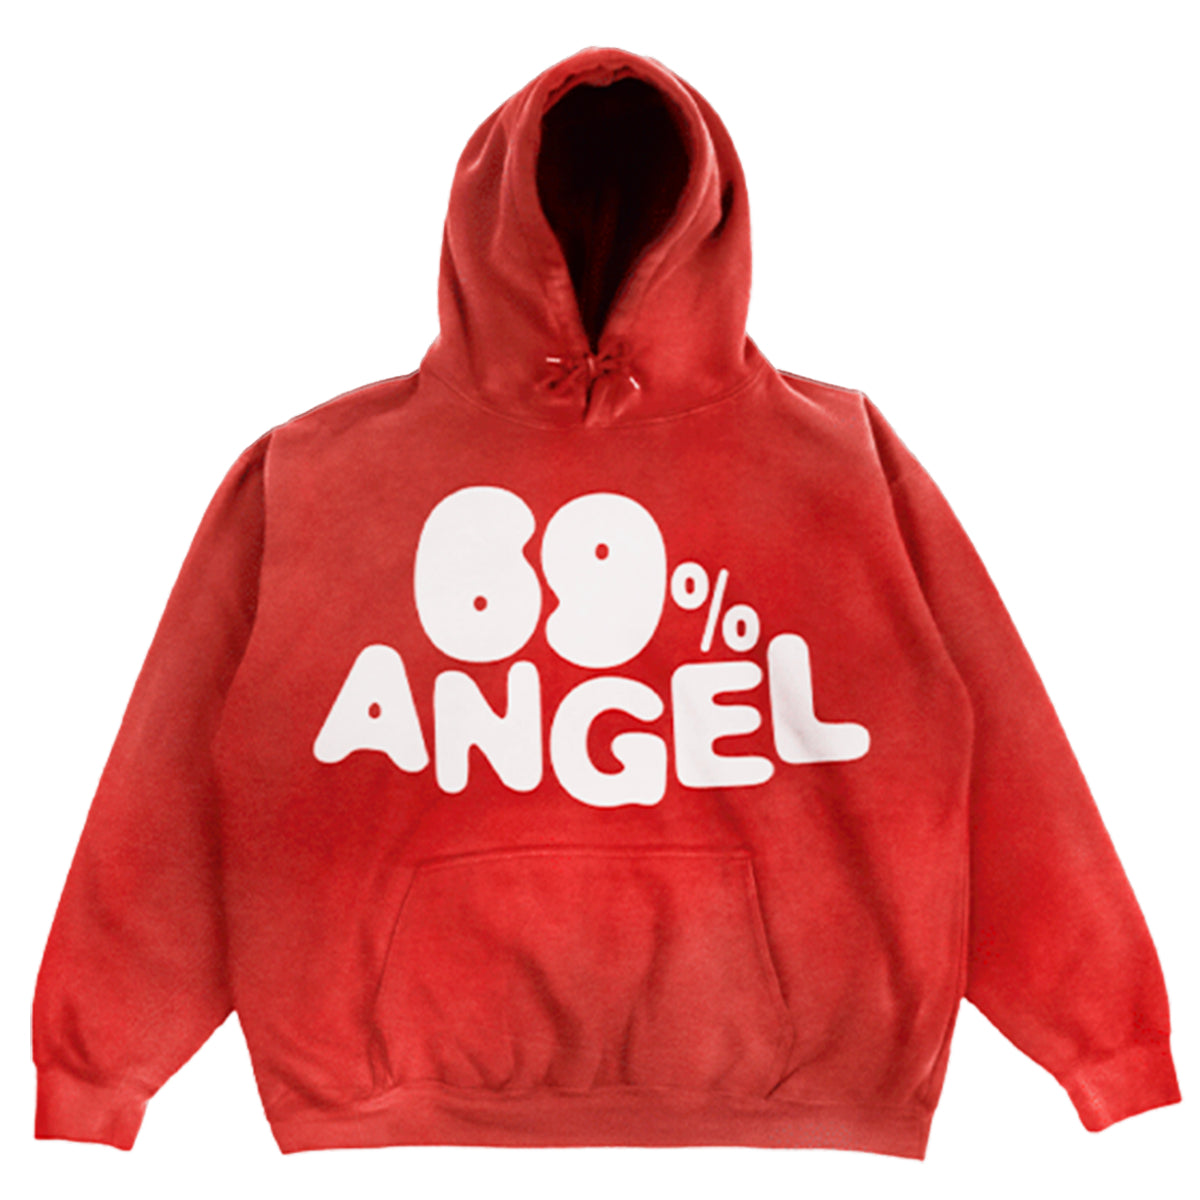 69% Angel Red Hoodie